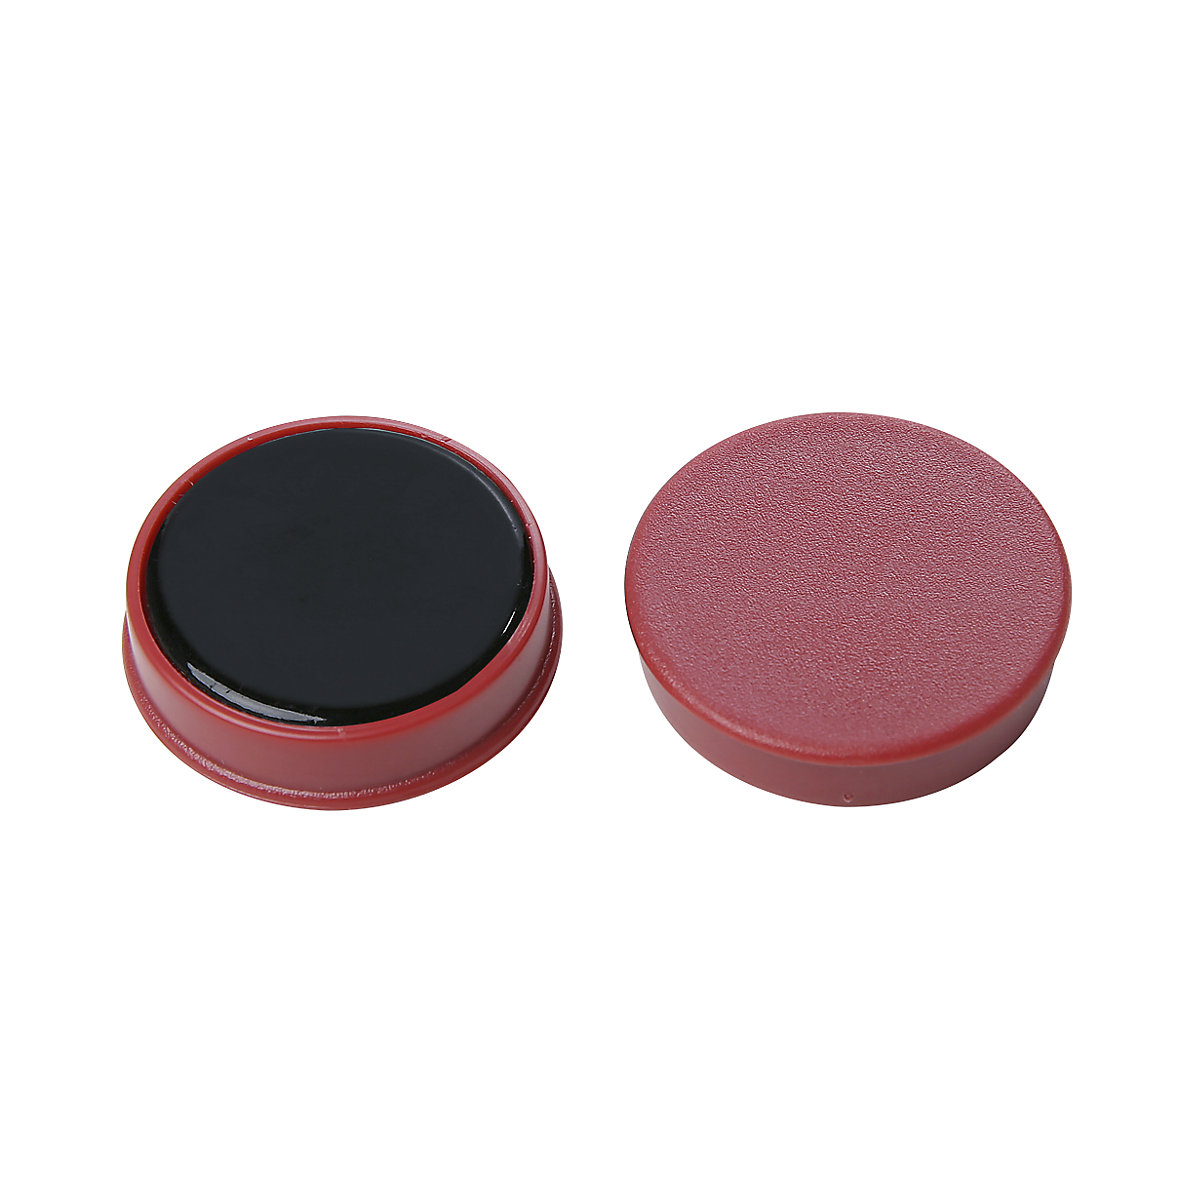 Műanyag kerek mágnes – eurokraft basic, színek szerint osztályozva, kék, sárga, piros, Ø 20 mm, cs. e. 72 db-1